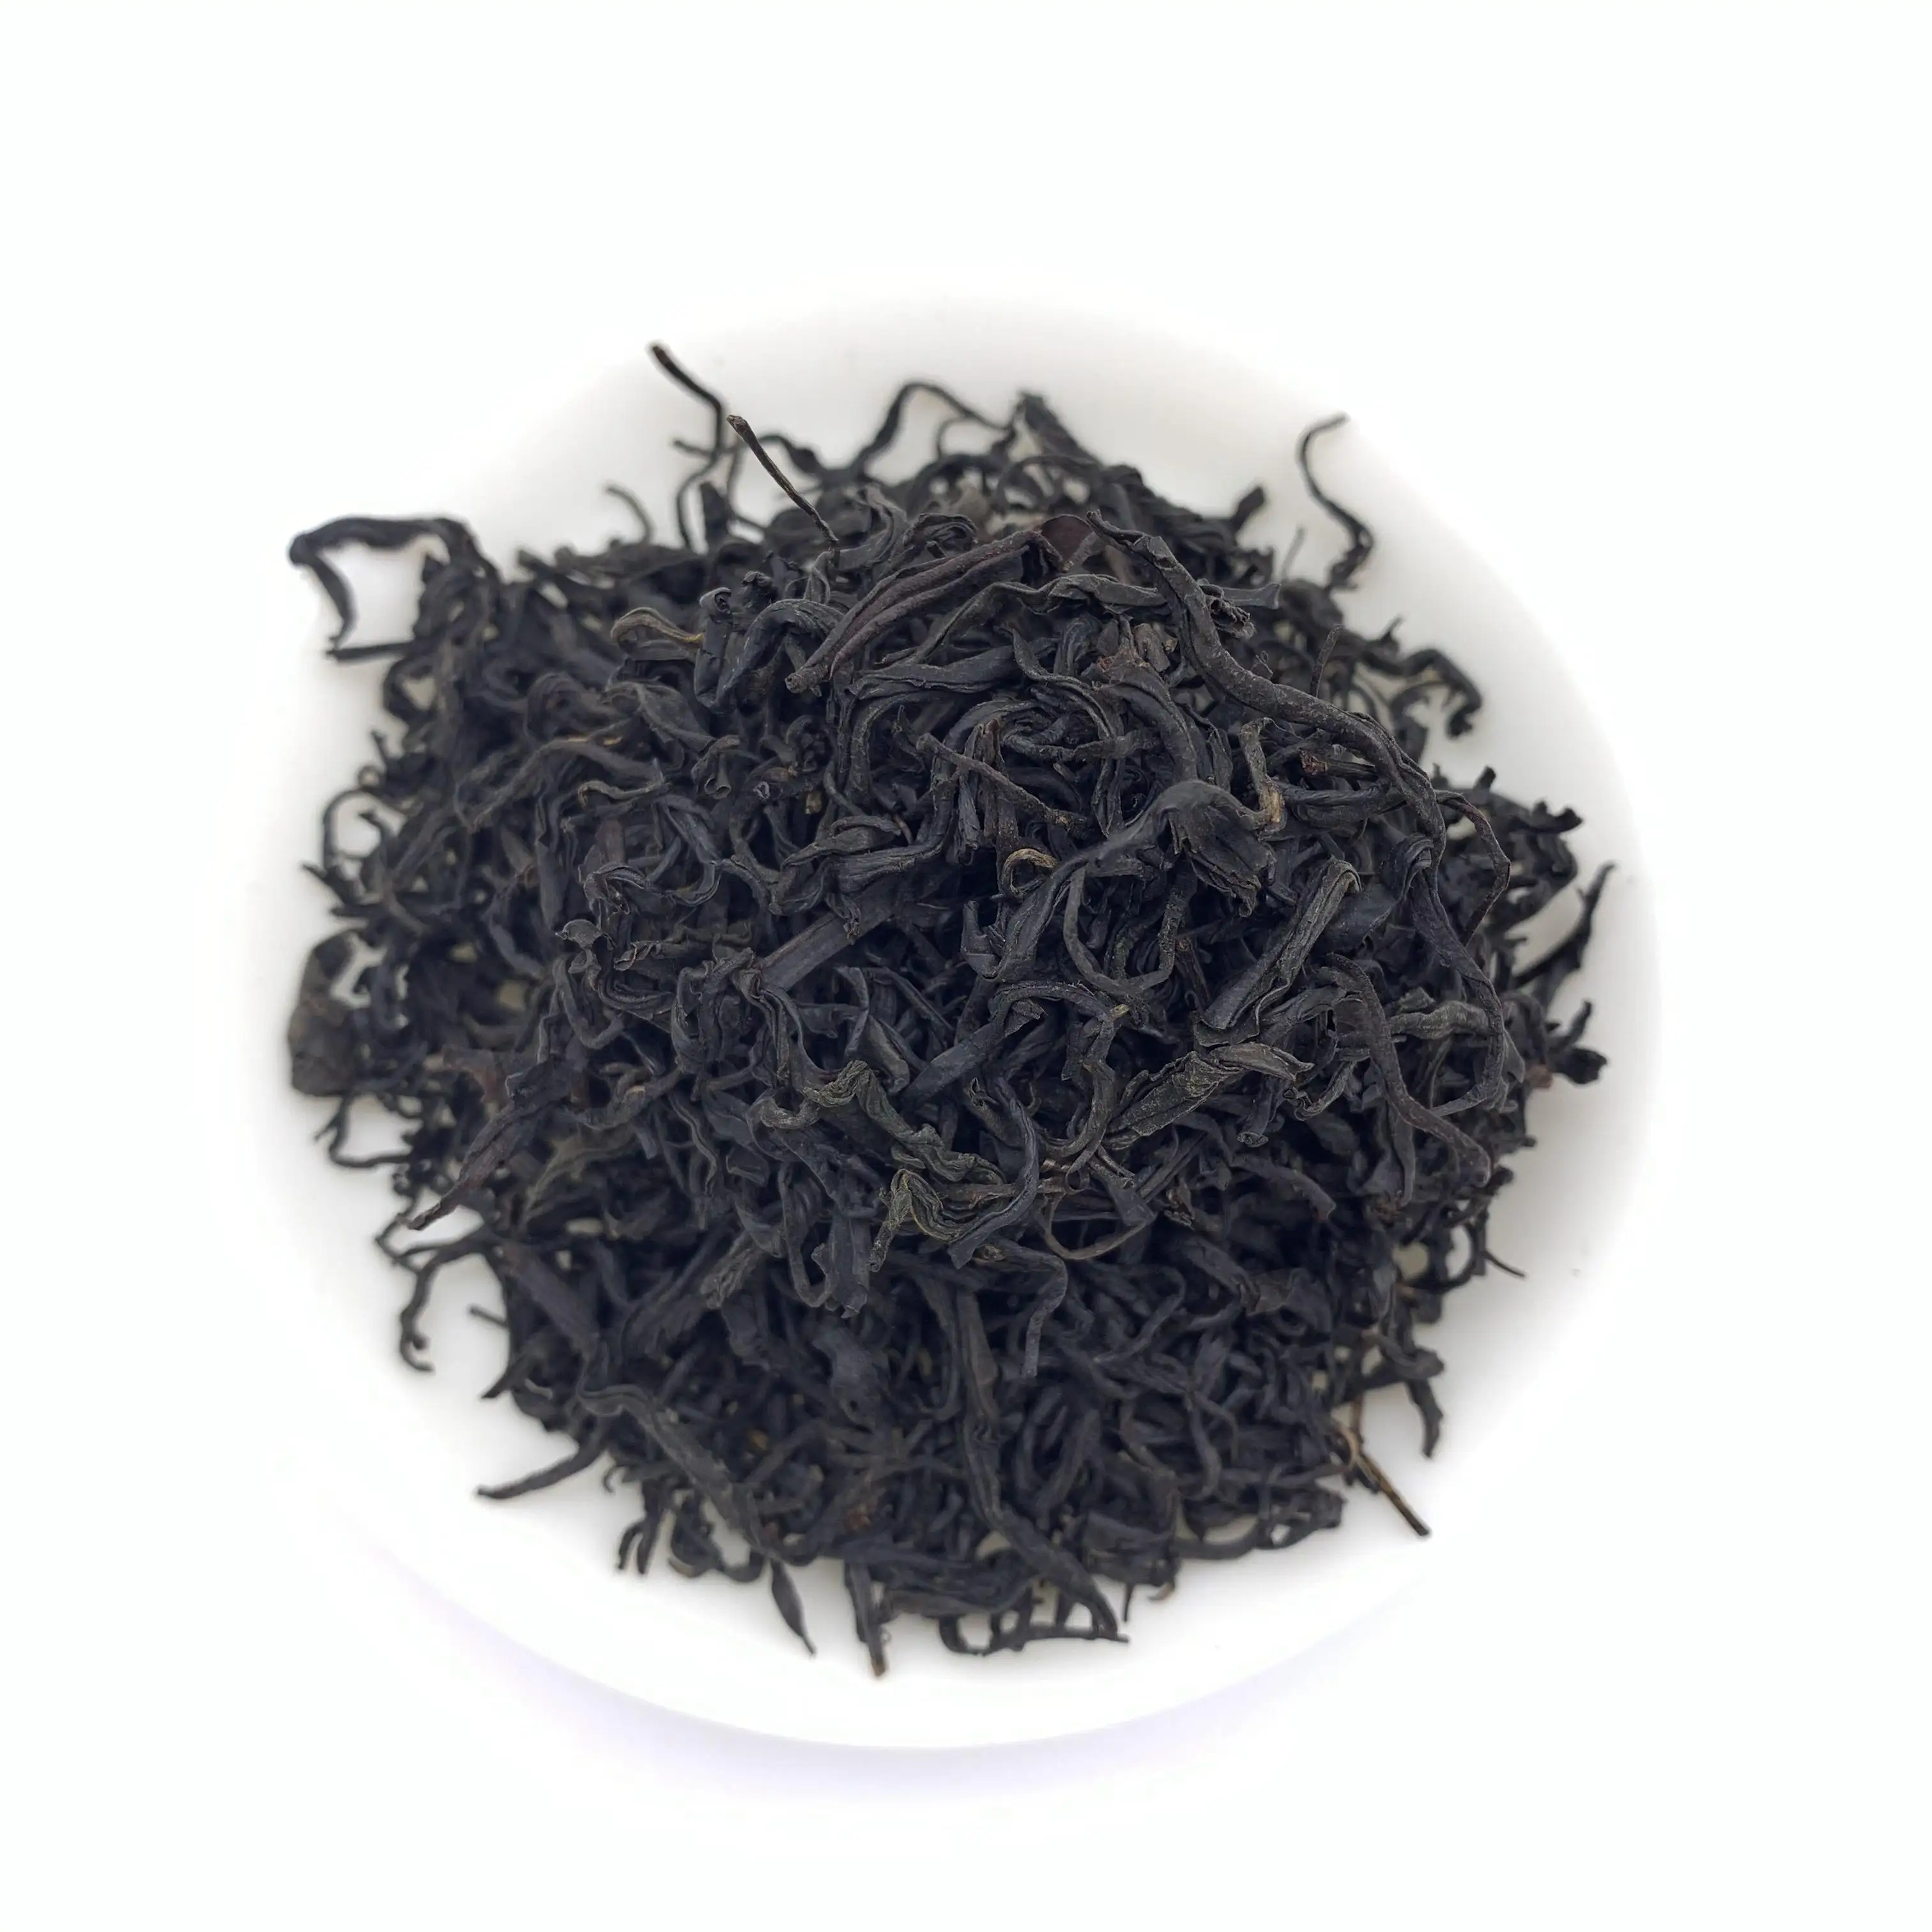 Chá preto alpino Shimen chá de arte com folhas soltas de alta qualidade chá preto feito à mão